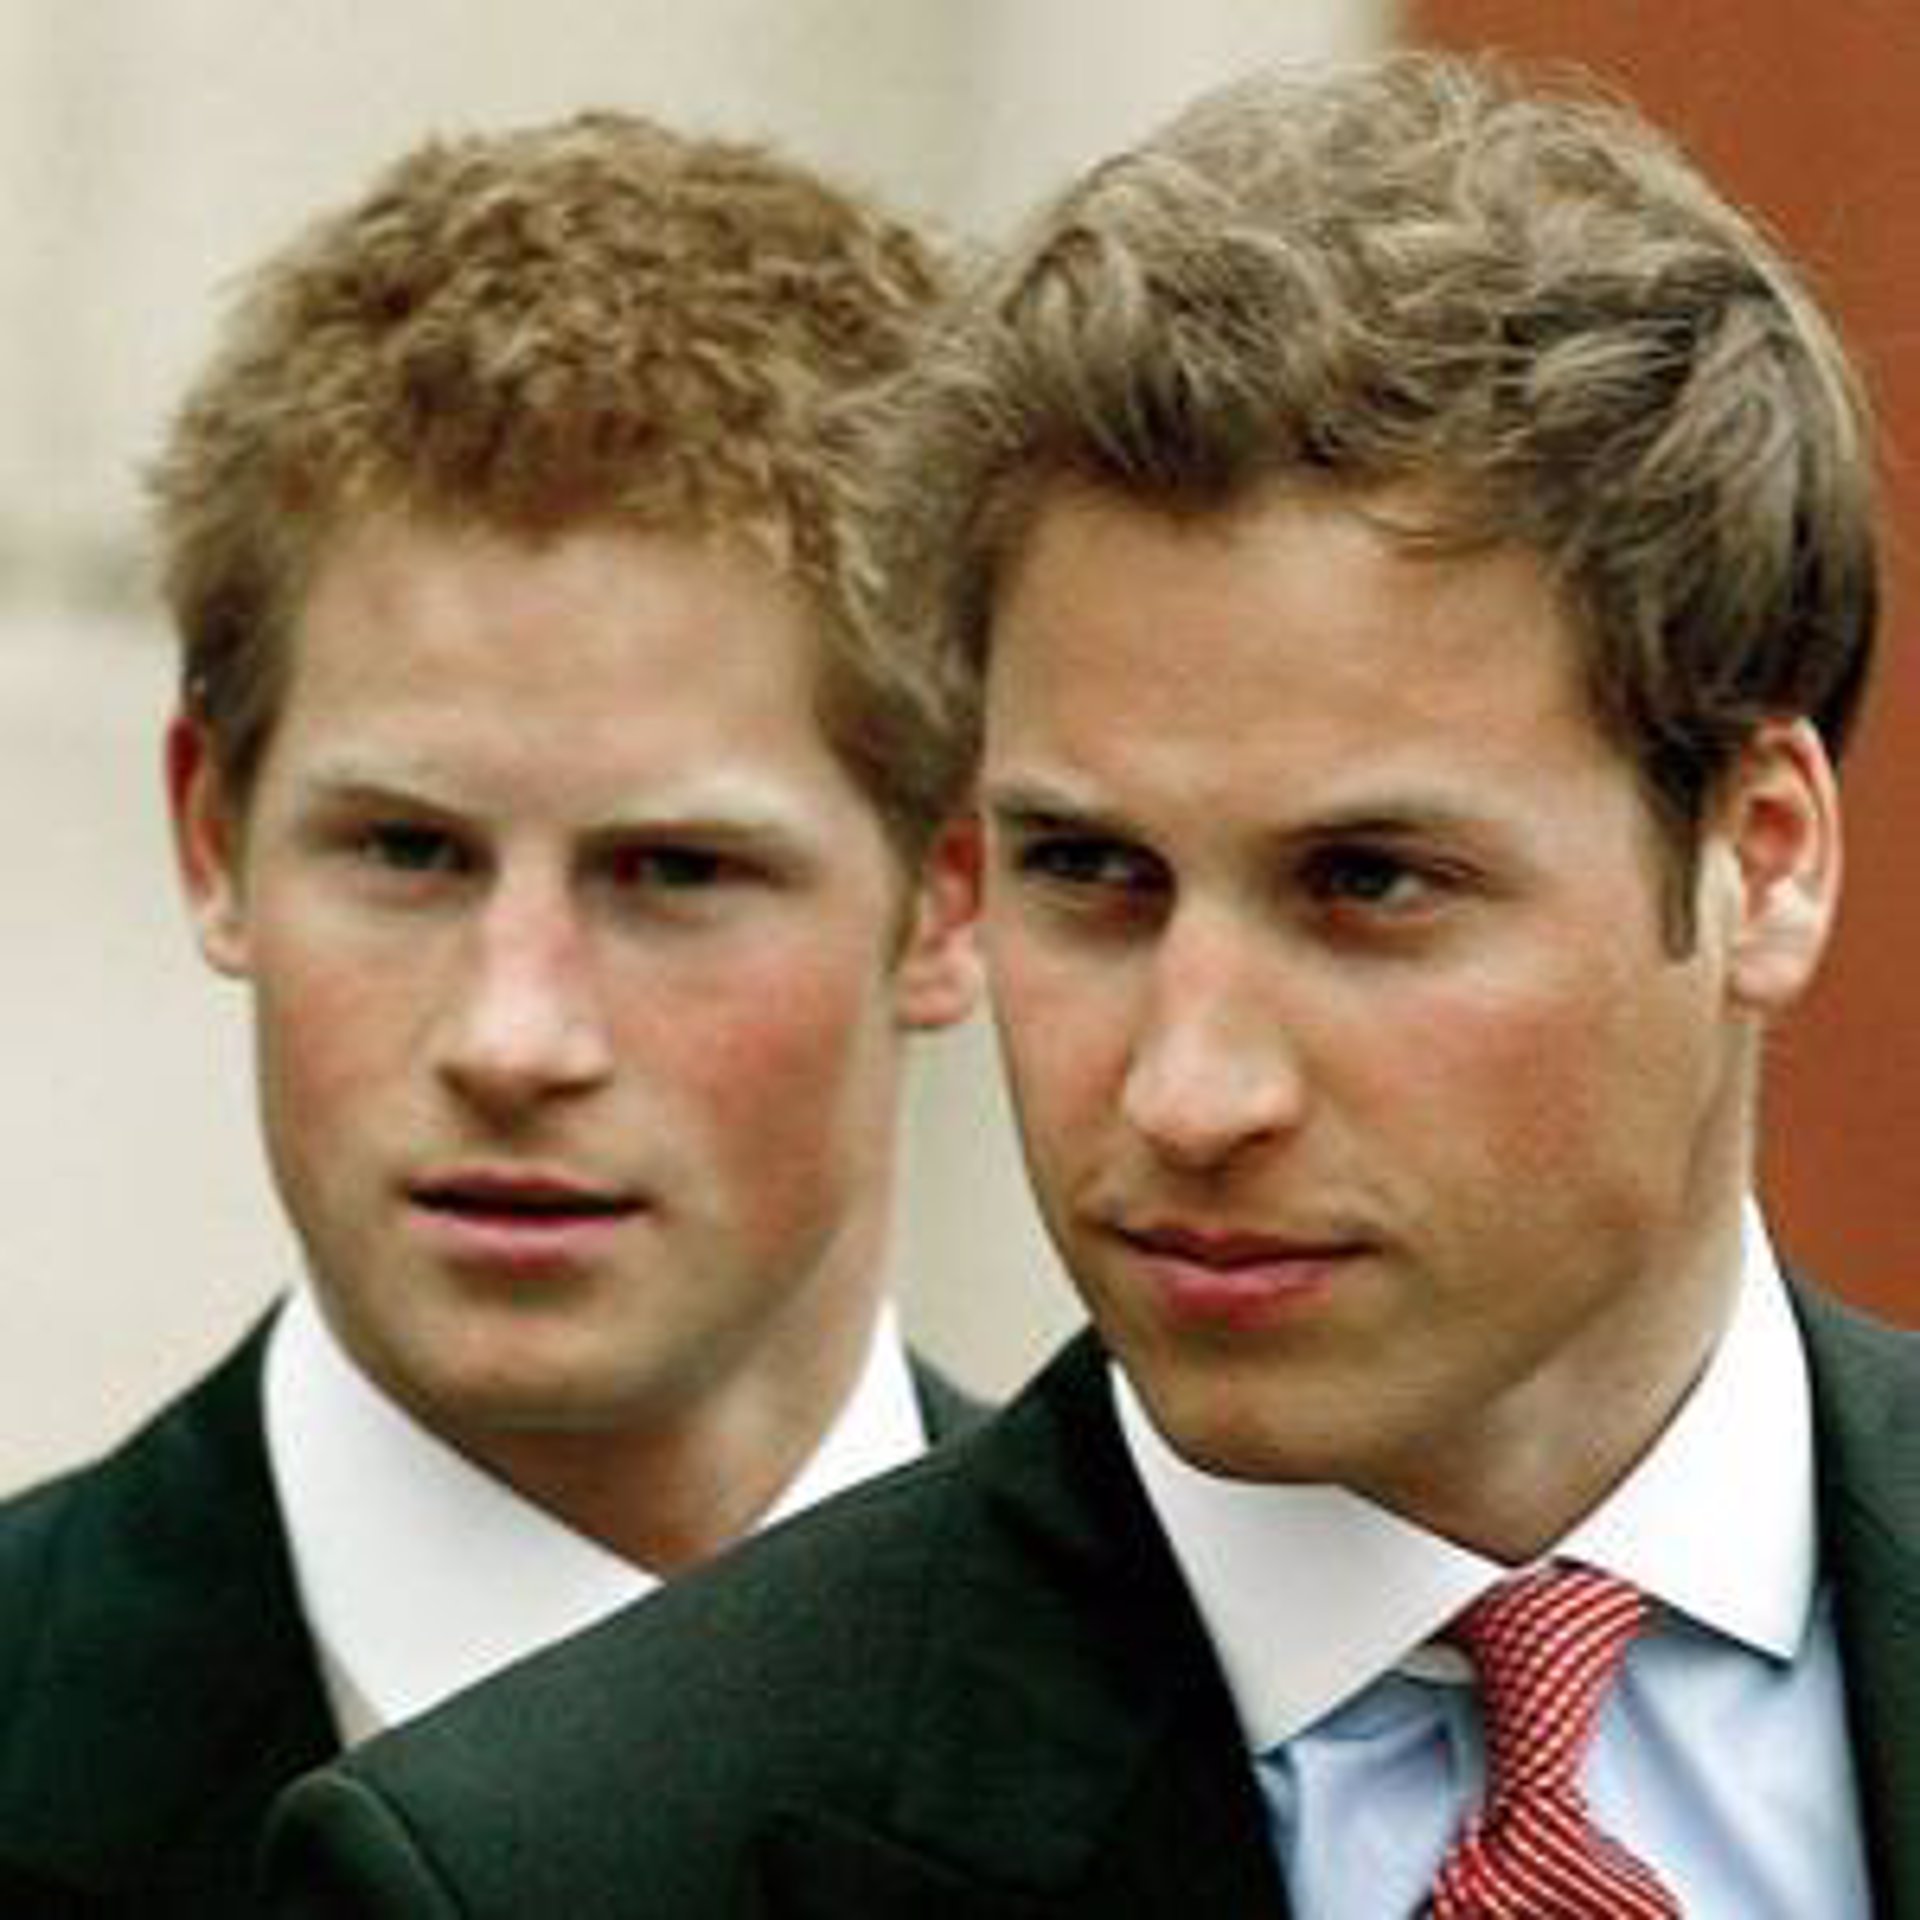 Los príncipes William y Harry de Inglaterra se confiesan en Antena 3